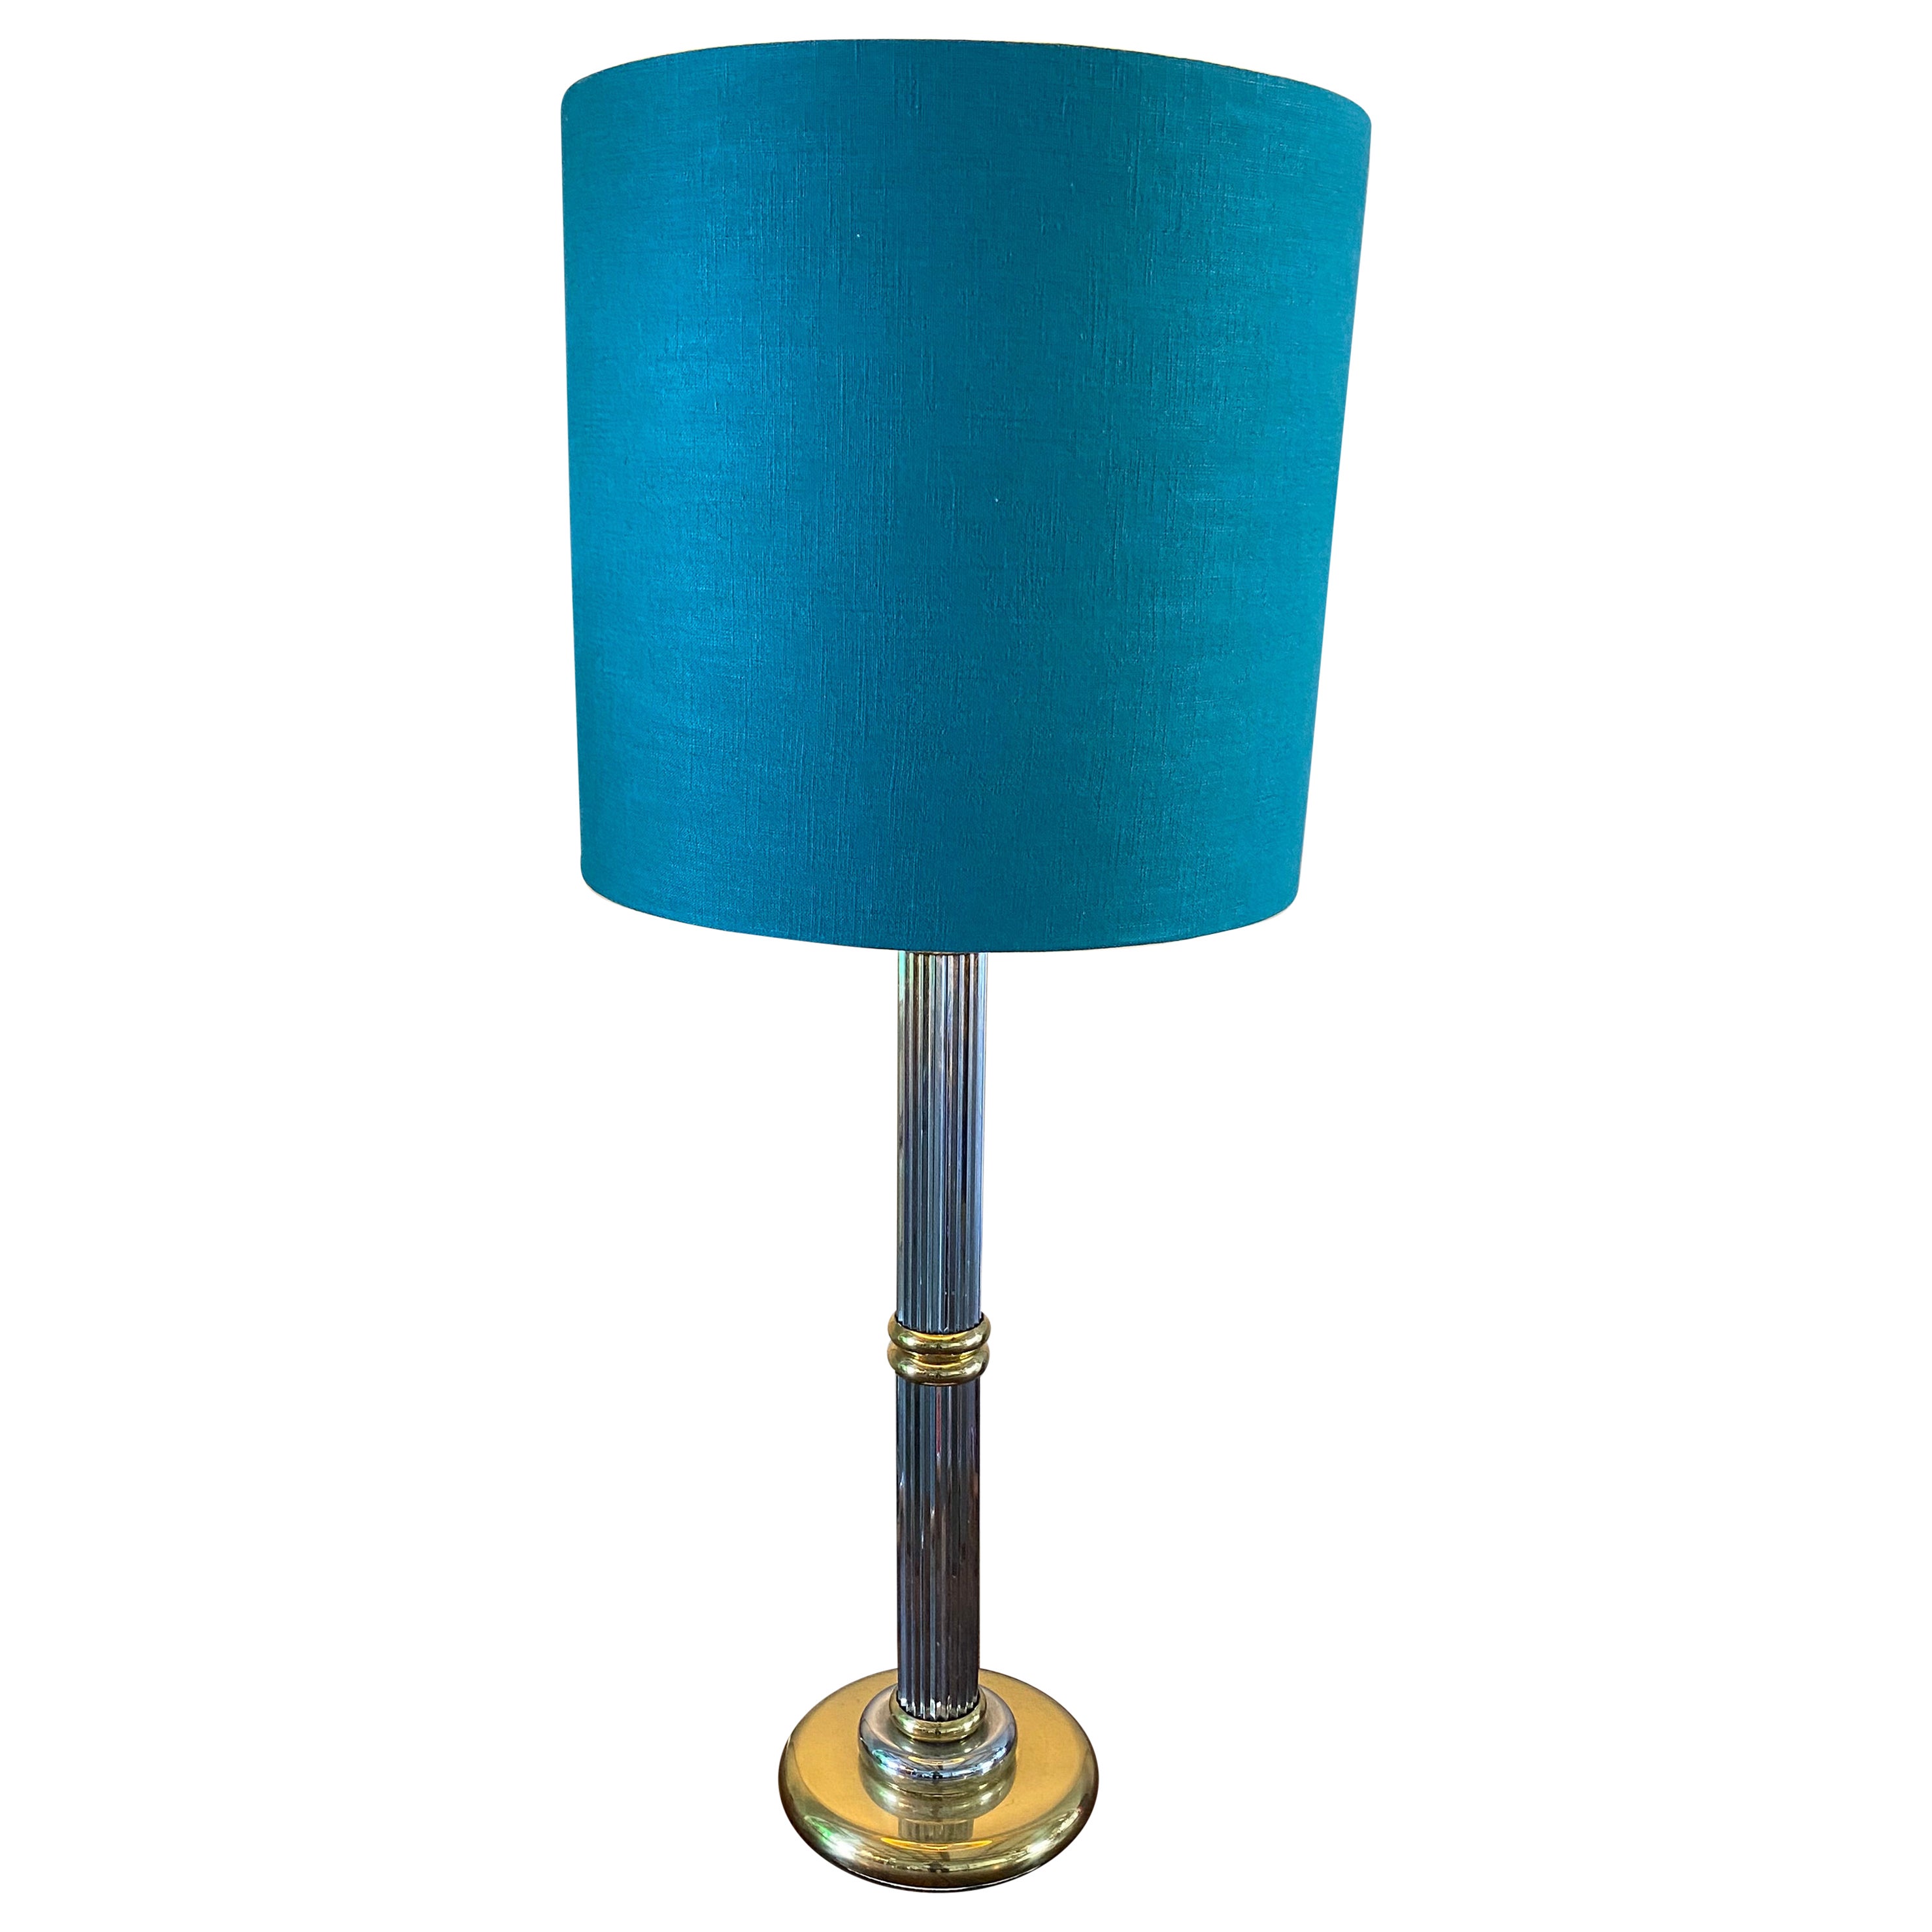 Grande lampe de table bicolore de style Hollywood Regency, abat-jour turquoise